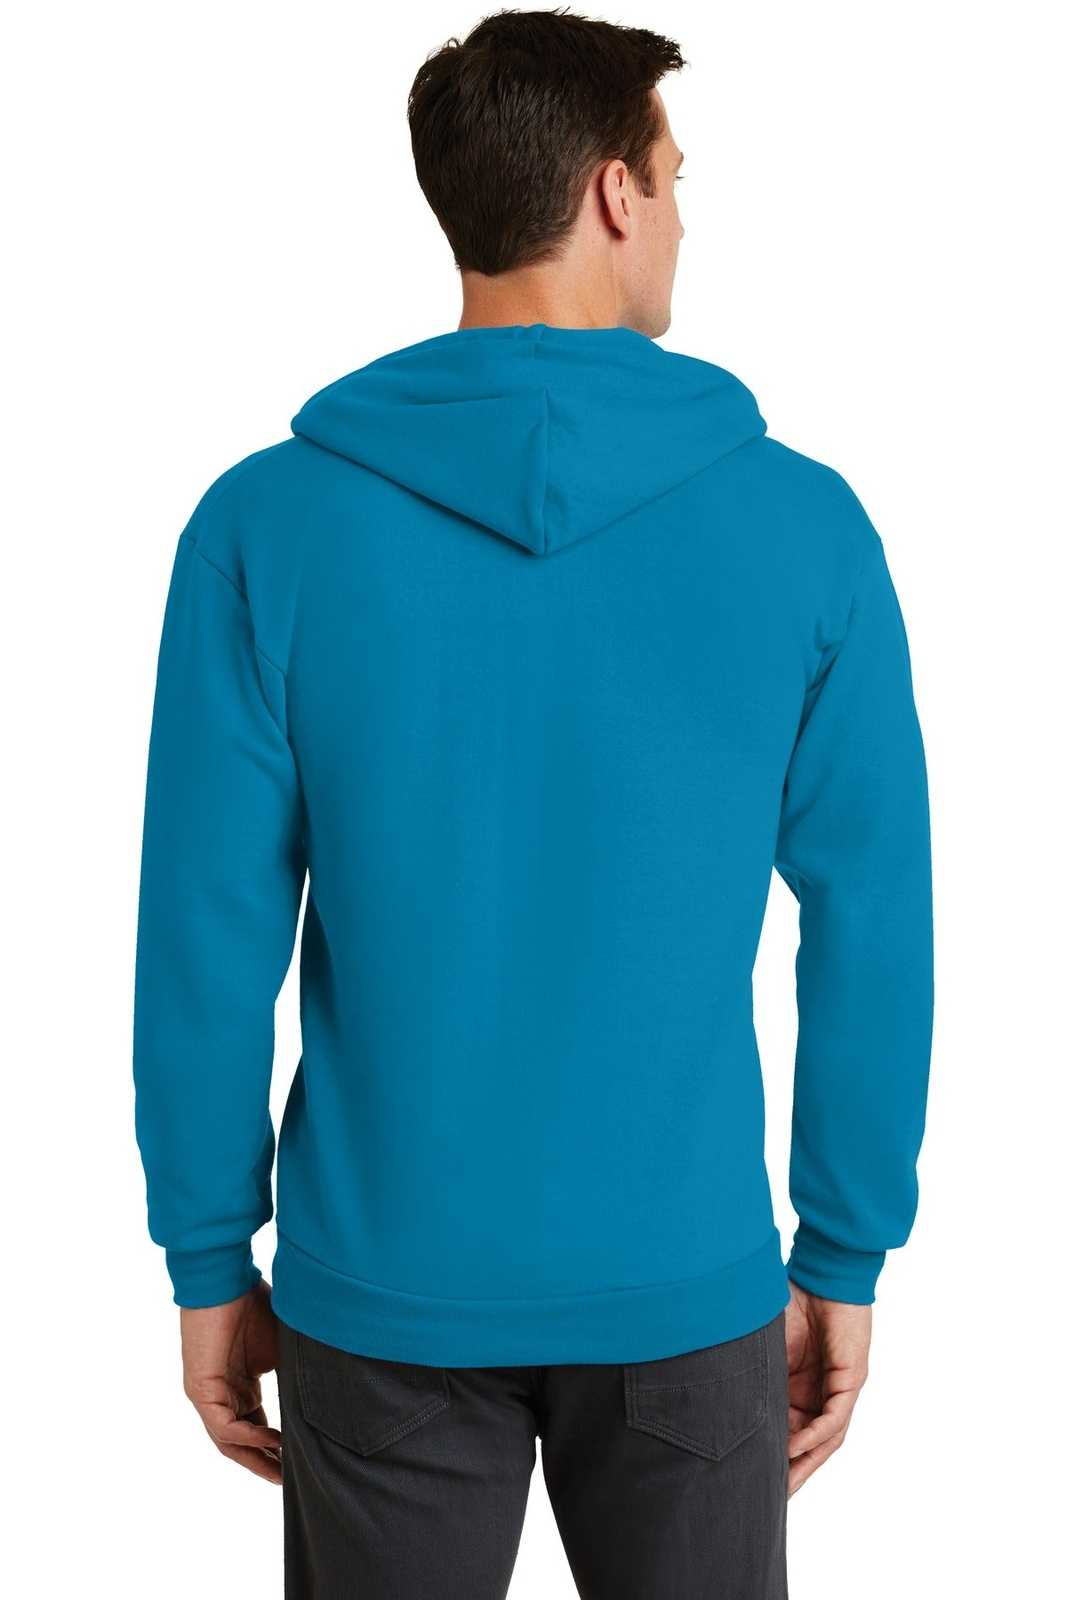 Port & Company PC78ZH Core Fleece Full-Zip Hooded Sweatshirt - Neon Blue - HIT a Double - 1